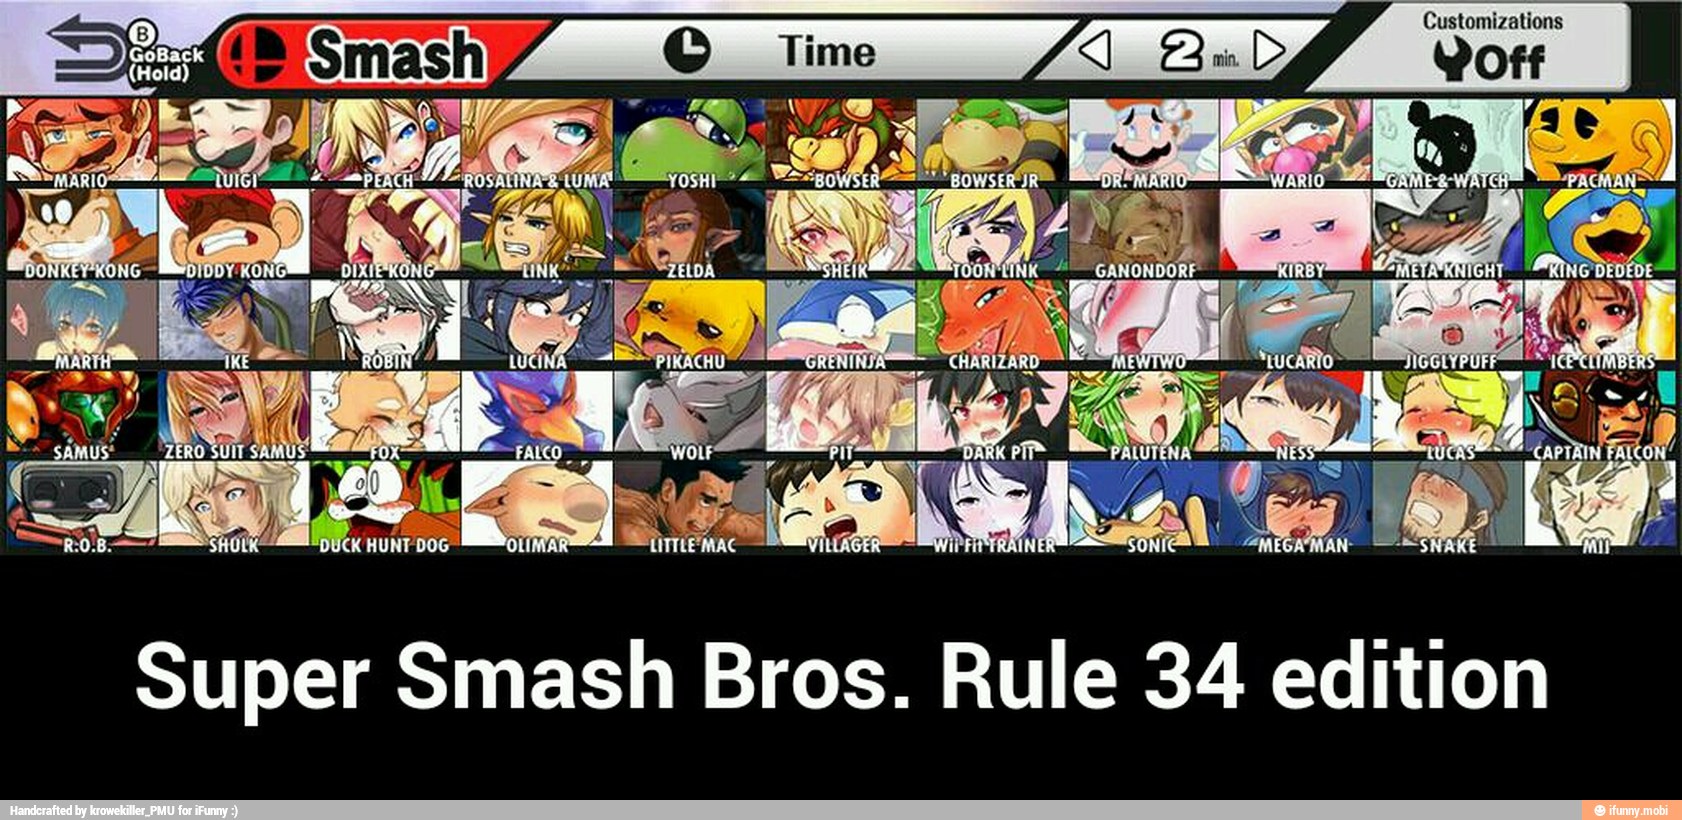 Rule 34 edition - Super Smash Bros. 